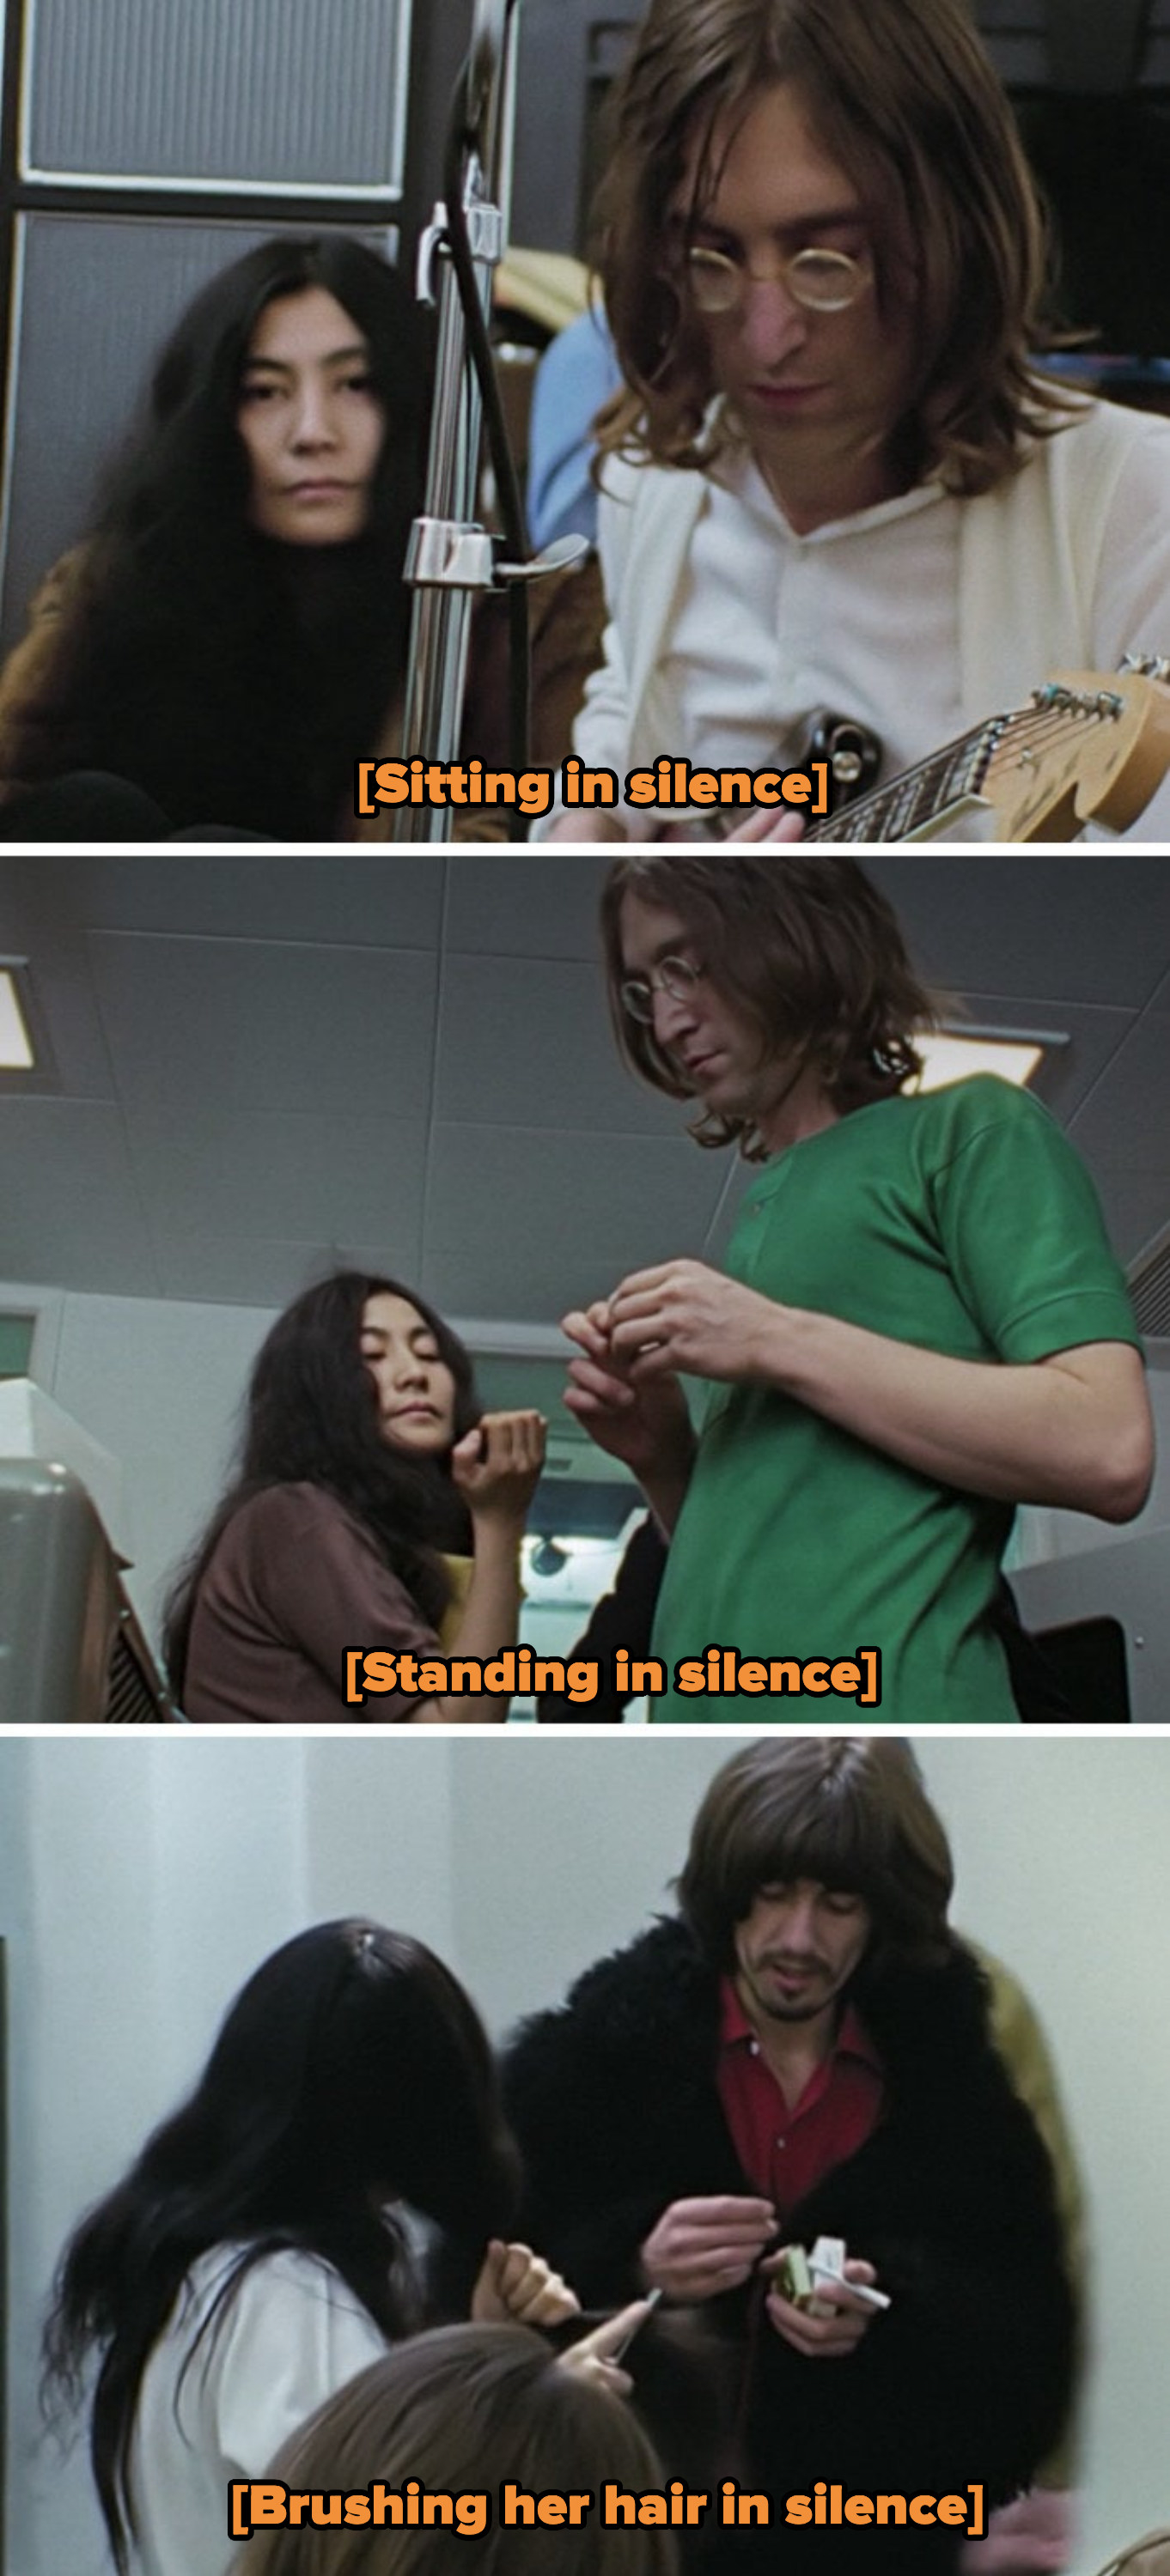 Yoko sitting in silence next to John; Yoko standing in silence next to John; Yoko brushing her hair in silence next to George